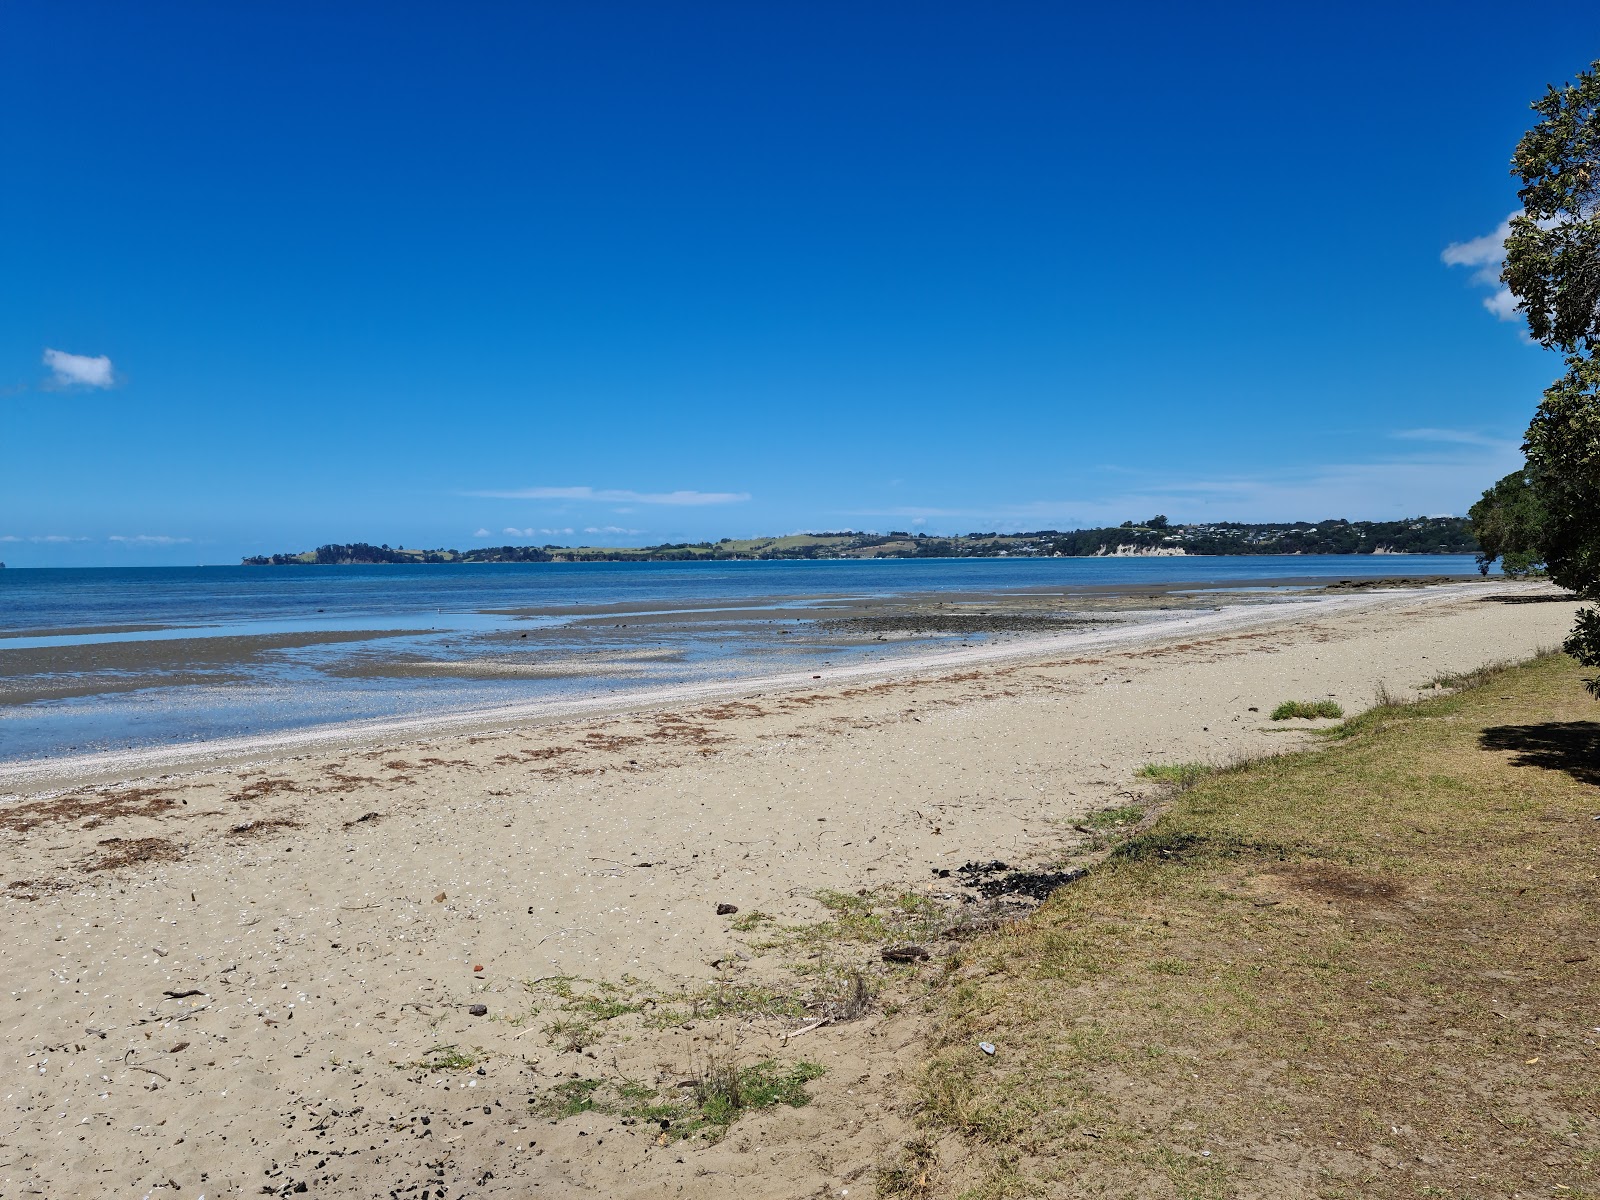 Zdjęcie Brick Bay Beach z powierzchnią jasny piasek